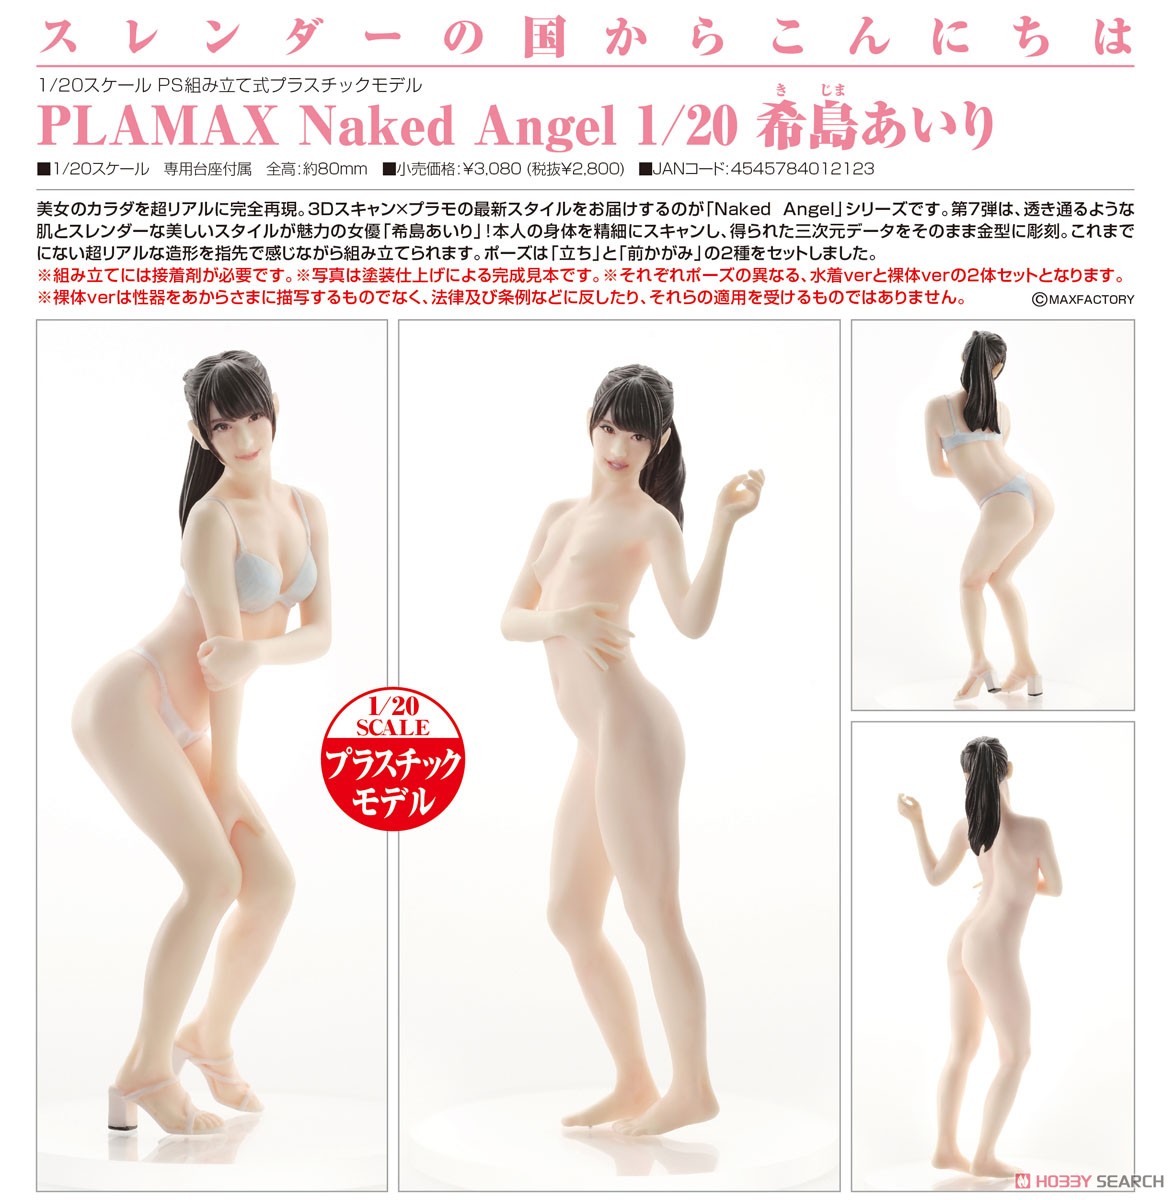 PLAMAX Naked Angel『希島あいり』1/20 プラモデル-006